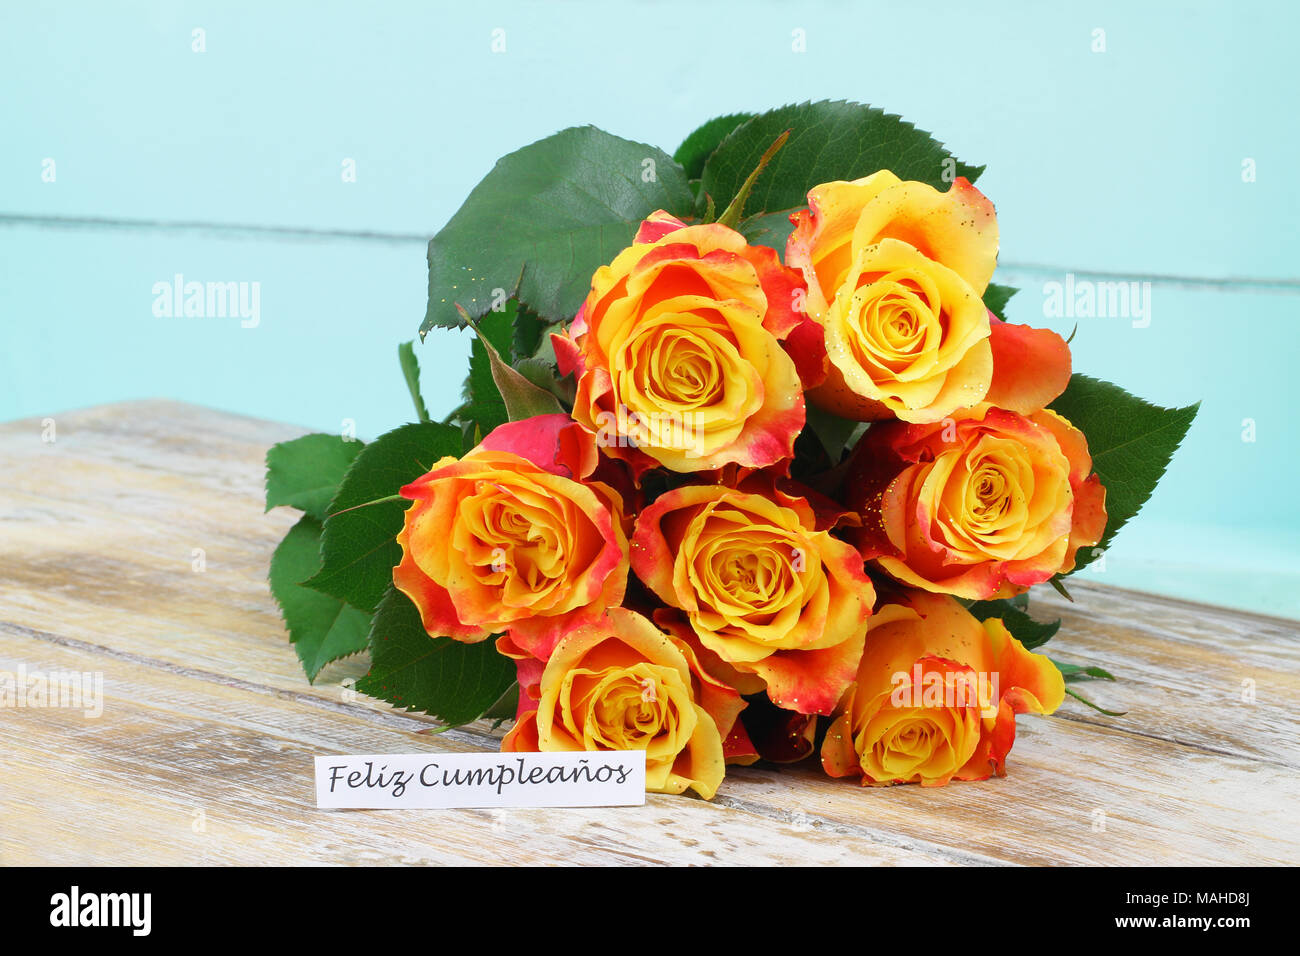 Feliz Cumpleanos Joyeux Anniversaire En Espagnol Avec Carte Bouquet De Roses Colorees Avec Des Paillettes Photo Stock Alamy